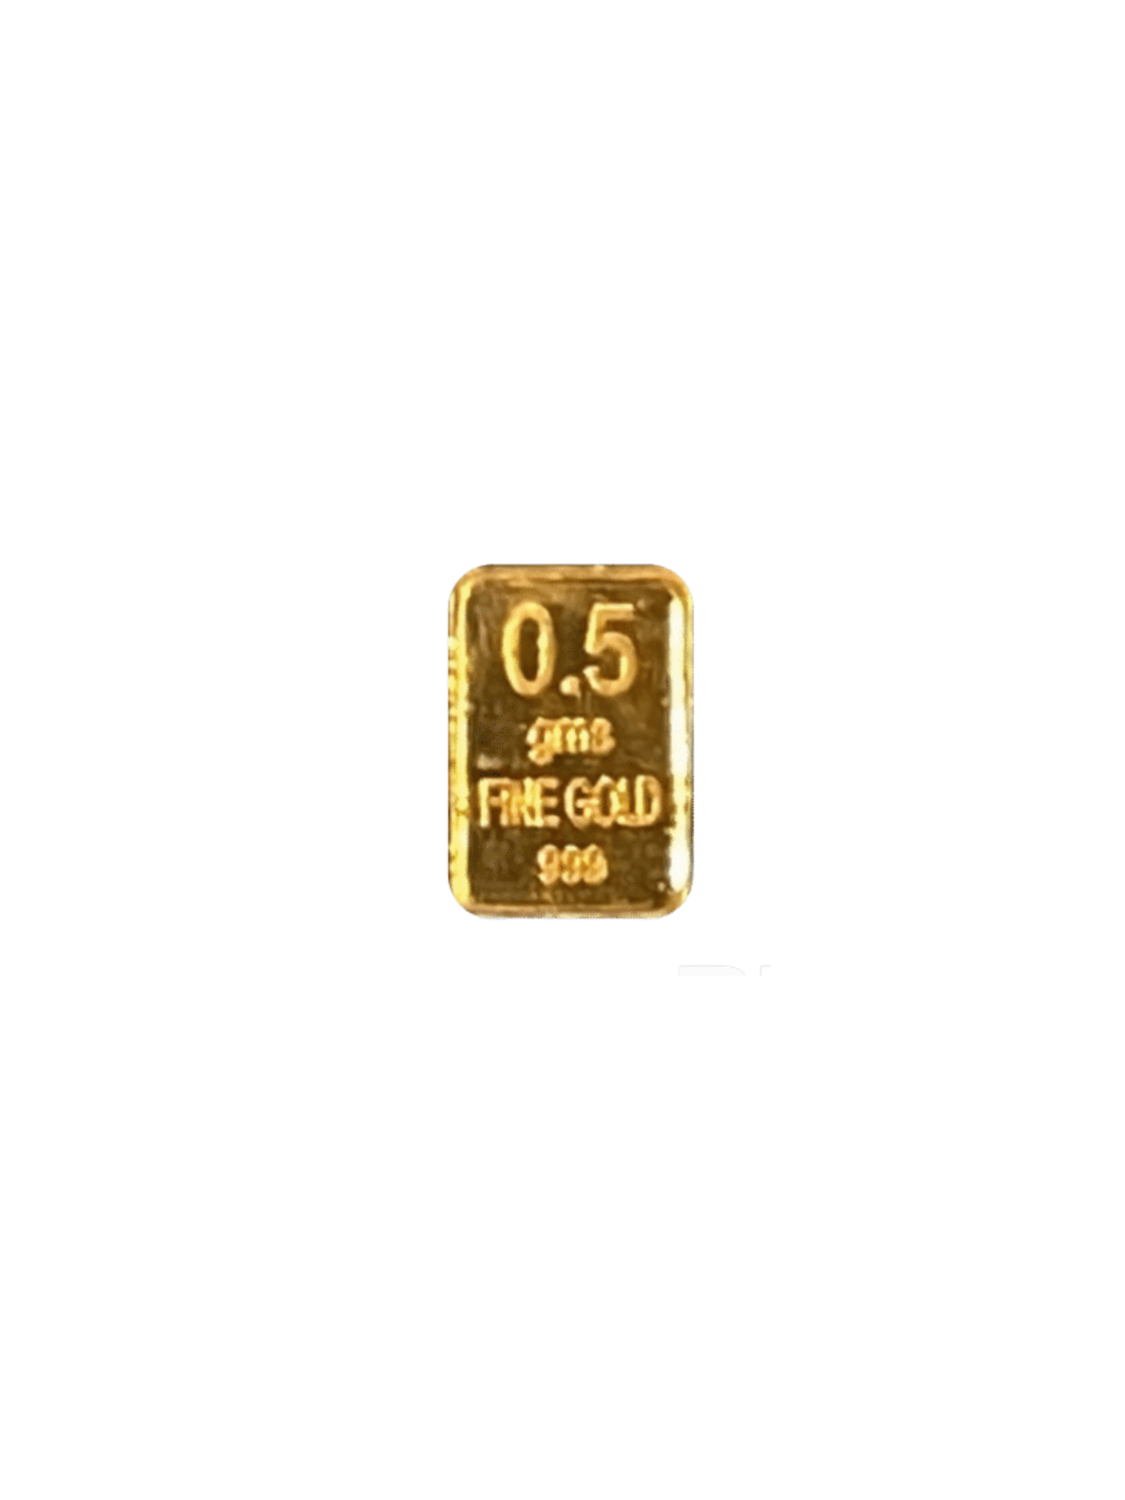 Recapita Gold Bar 0.5 Gms